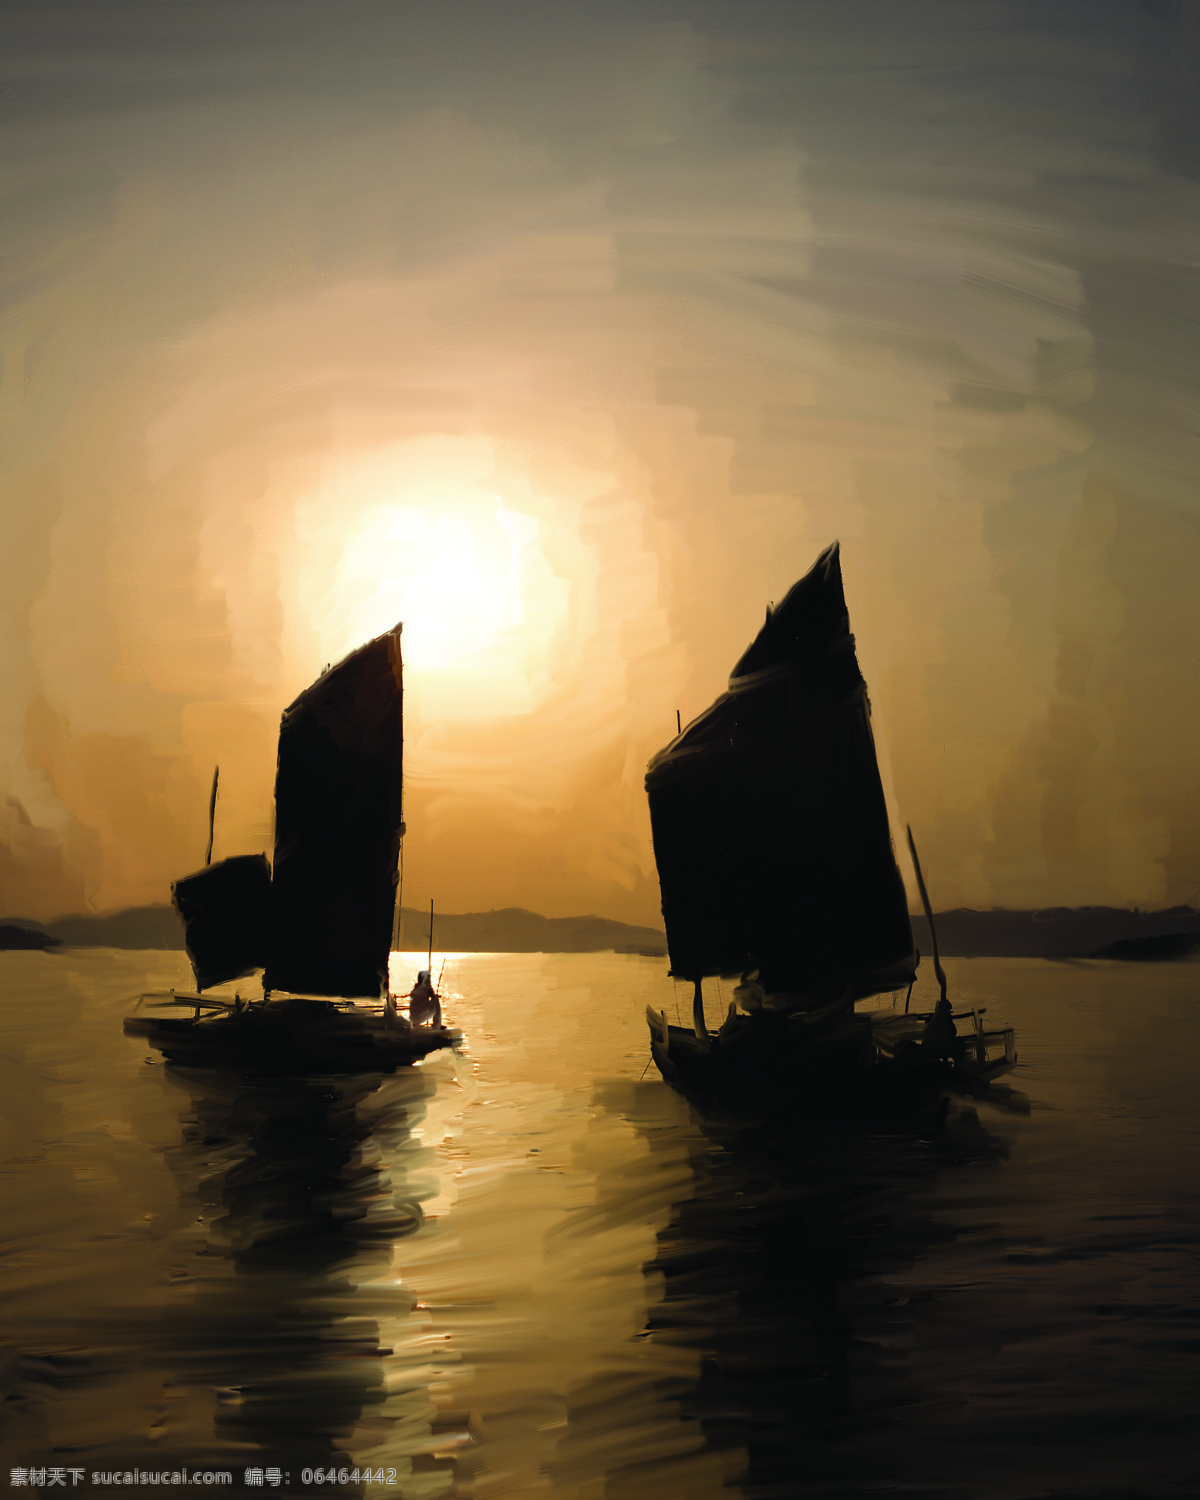 手绘 日落 船 大海 帆船 画 绘画书法 手绘日落 油画 出海 文化艺术 装饰素材